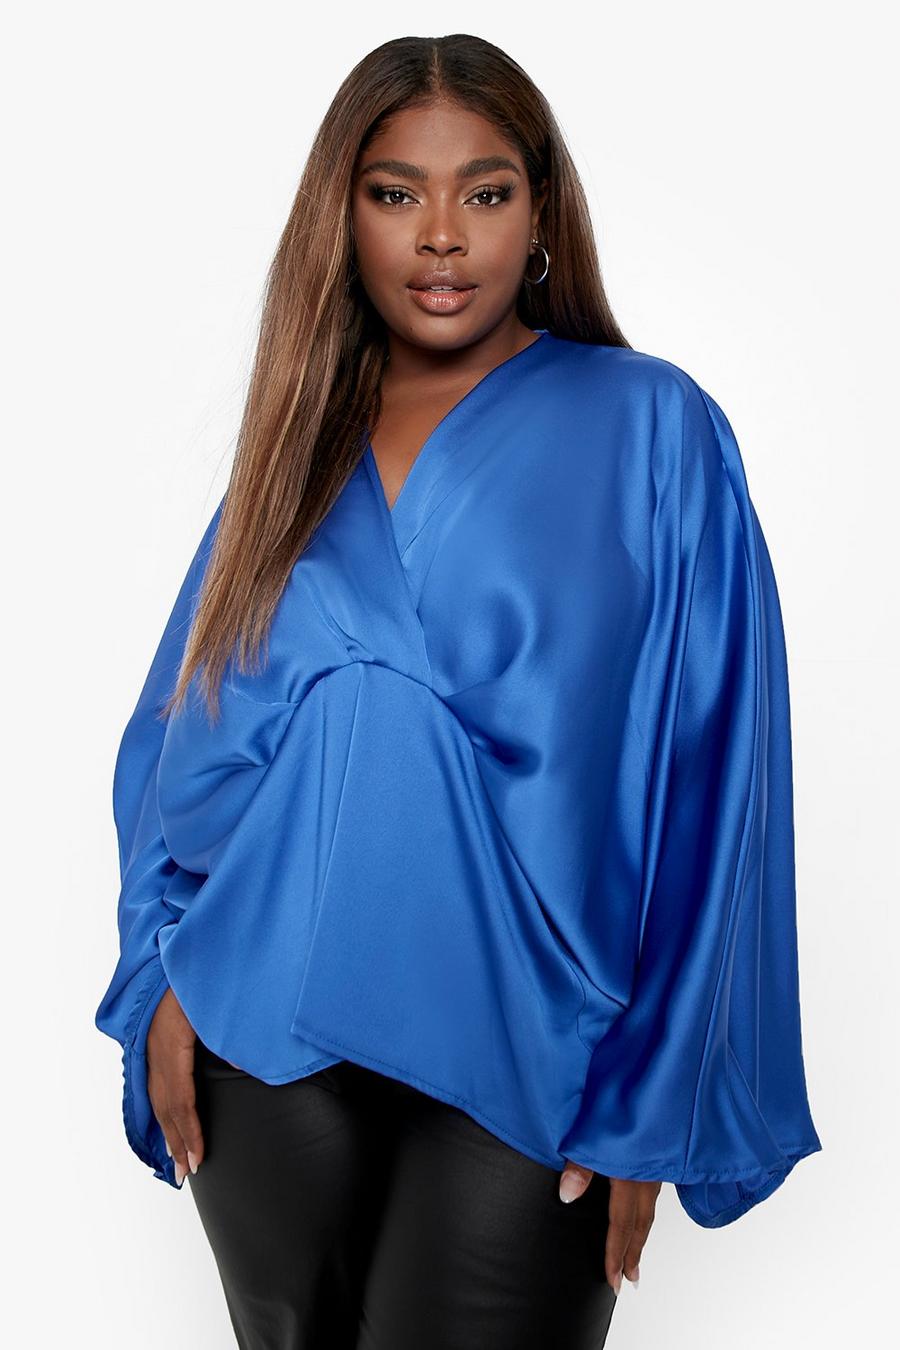 Blusa Plus Size in raso con nodo e maniche stile kimono, Cobalt azzurro